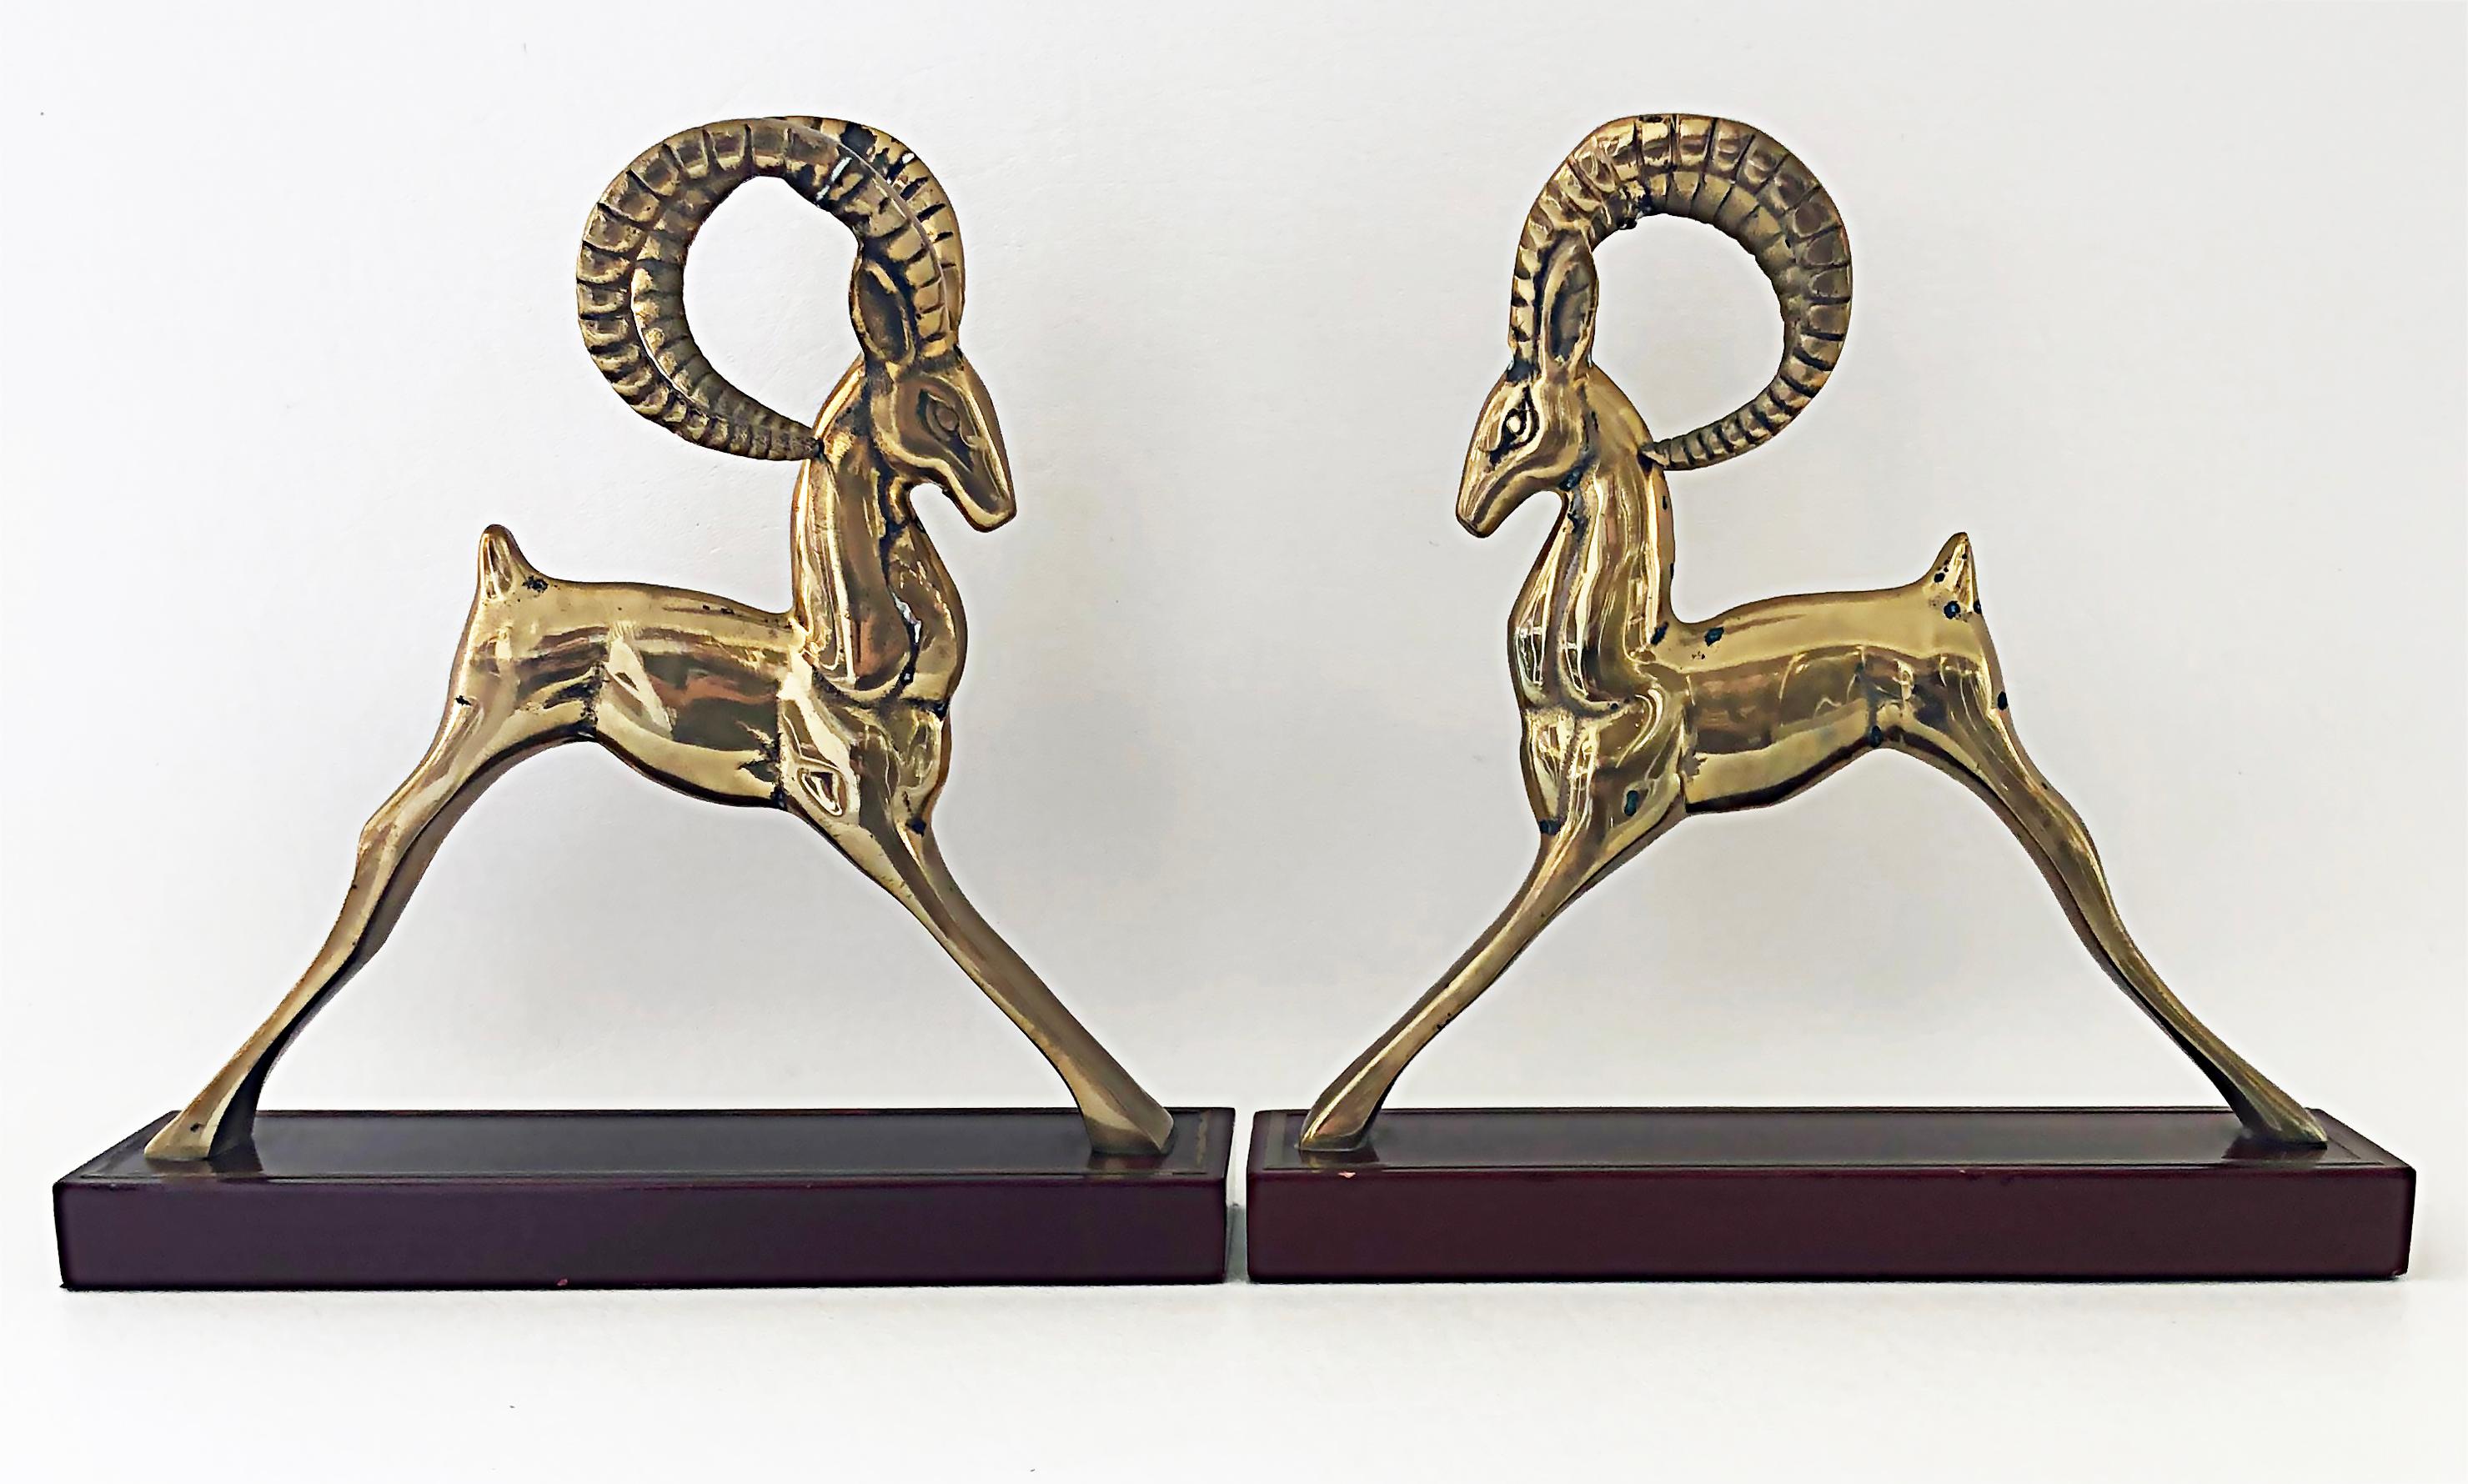 Sculptures serre-livres Gazelle en laiton, style déco moderniste, une paire

Nous proposons à la vente une paire de serre-livres ou de sculptures de garniture en laiton, de style art déco ou moderniste, représentant des gazelles. Ils sont montés